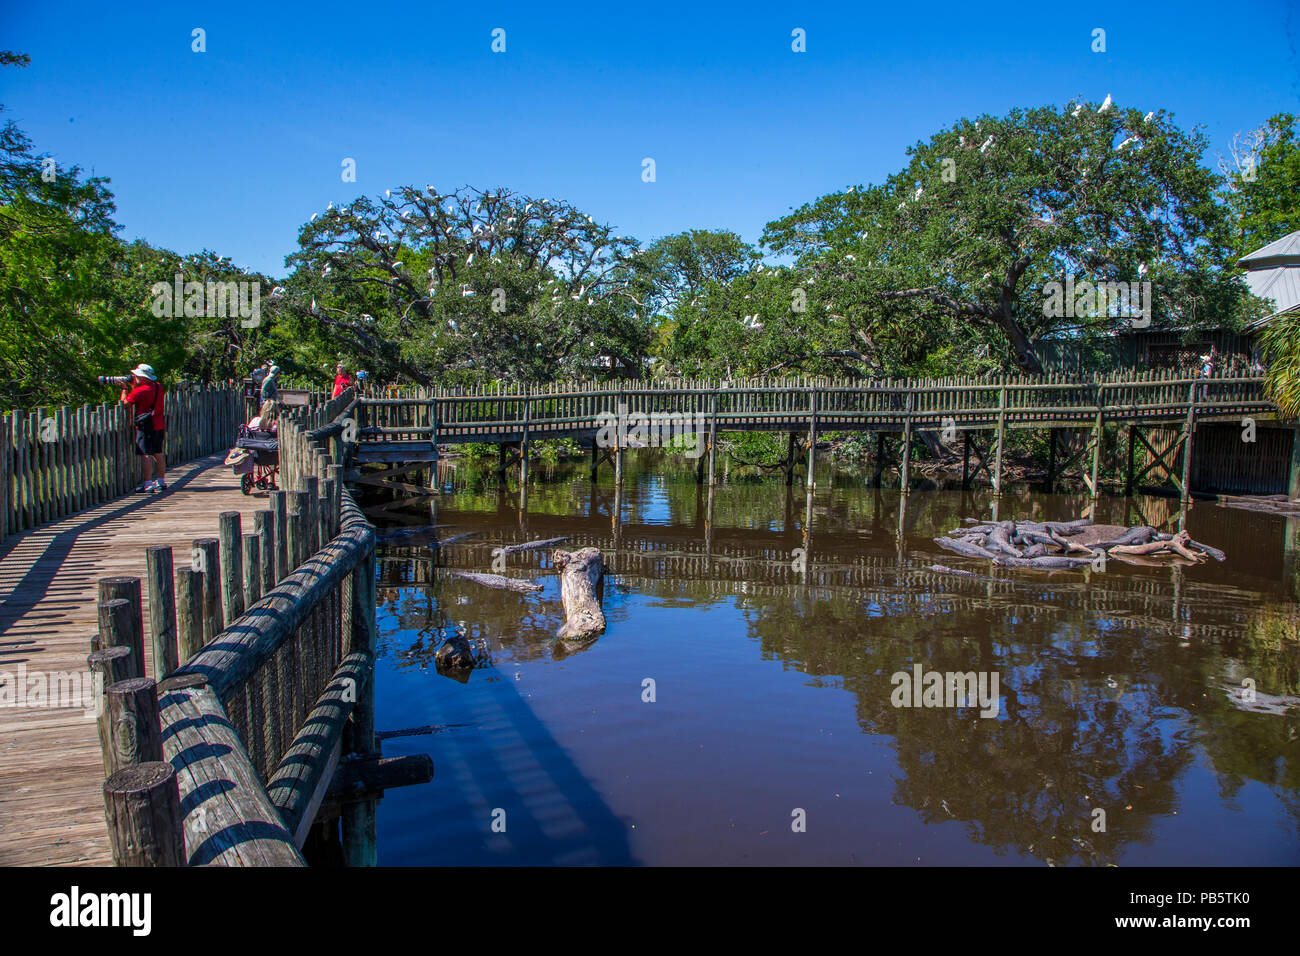 Promenade dans les marais & bird rookery à Saint Augustine Alligator Farm Zoological Park à St Augustine en Floride Banque D'Images